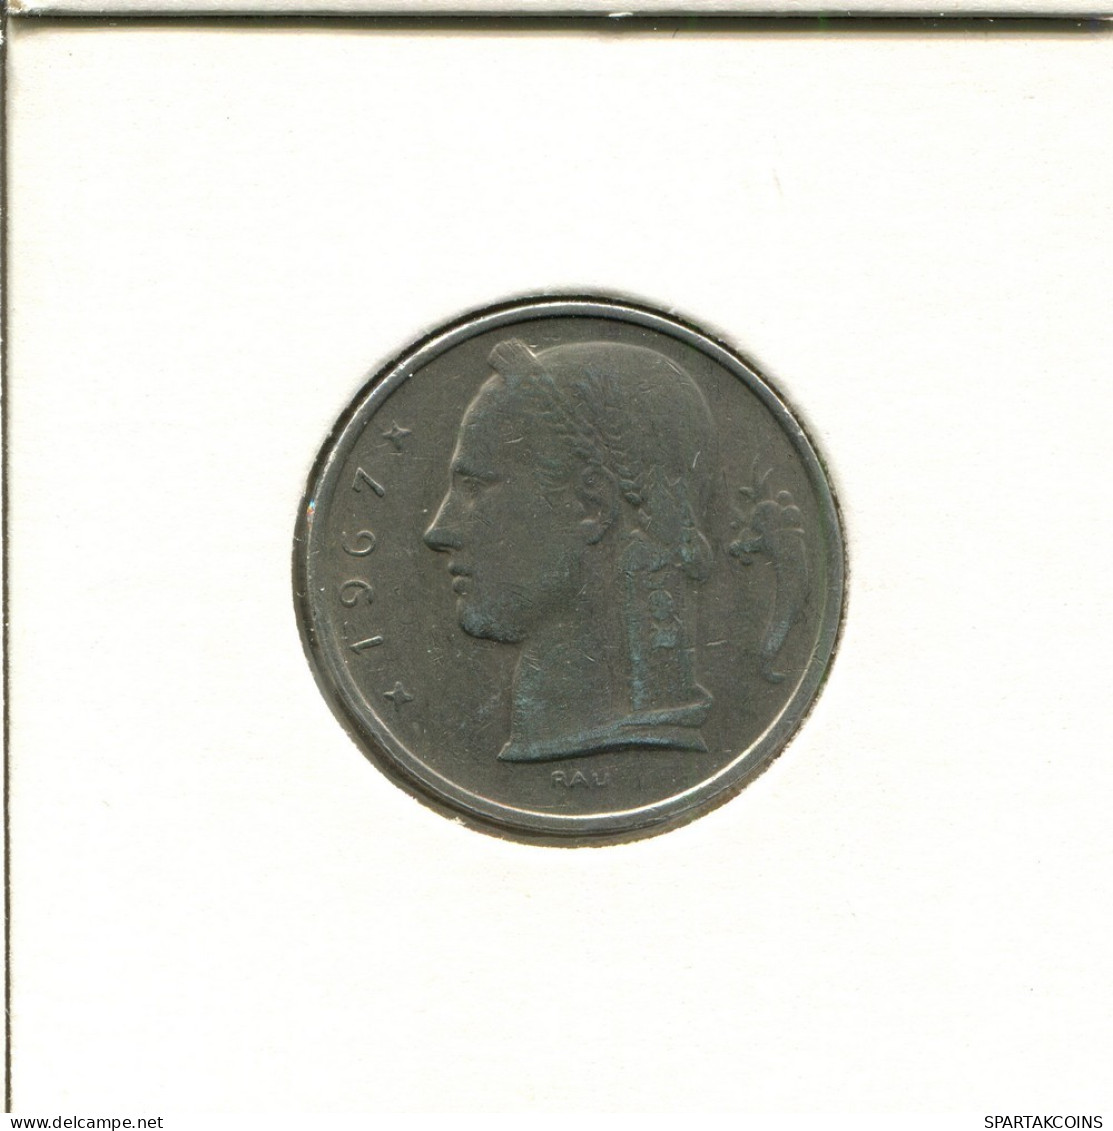 5 FRANCS 1967 FRENCH Text BÉLGICA BELGIUM Moneda #AU047.E.A - 5 Francs